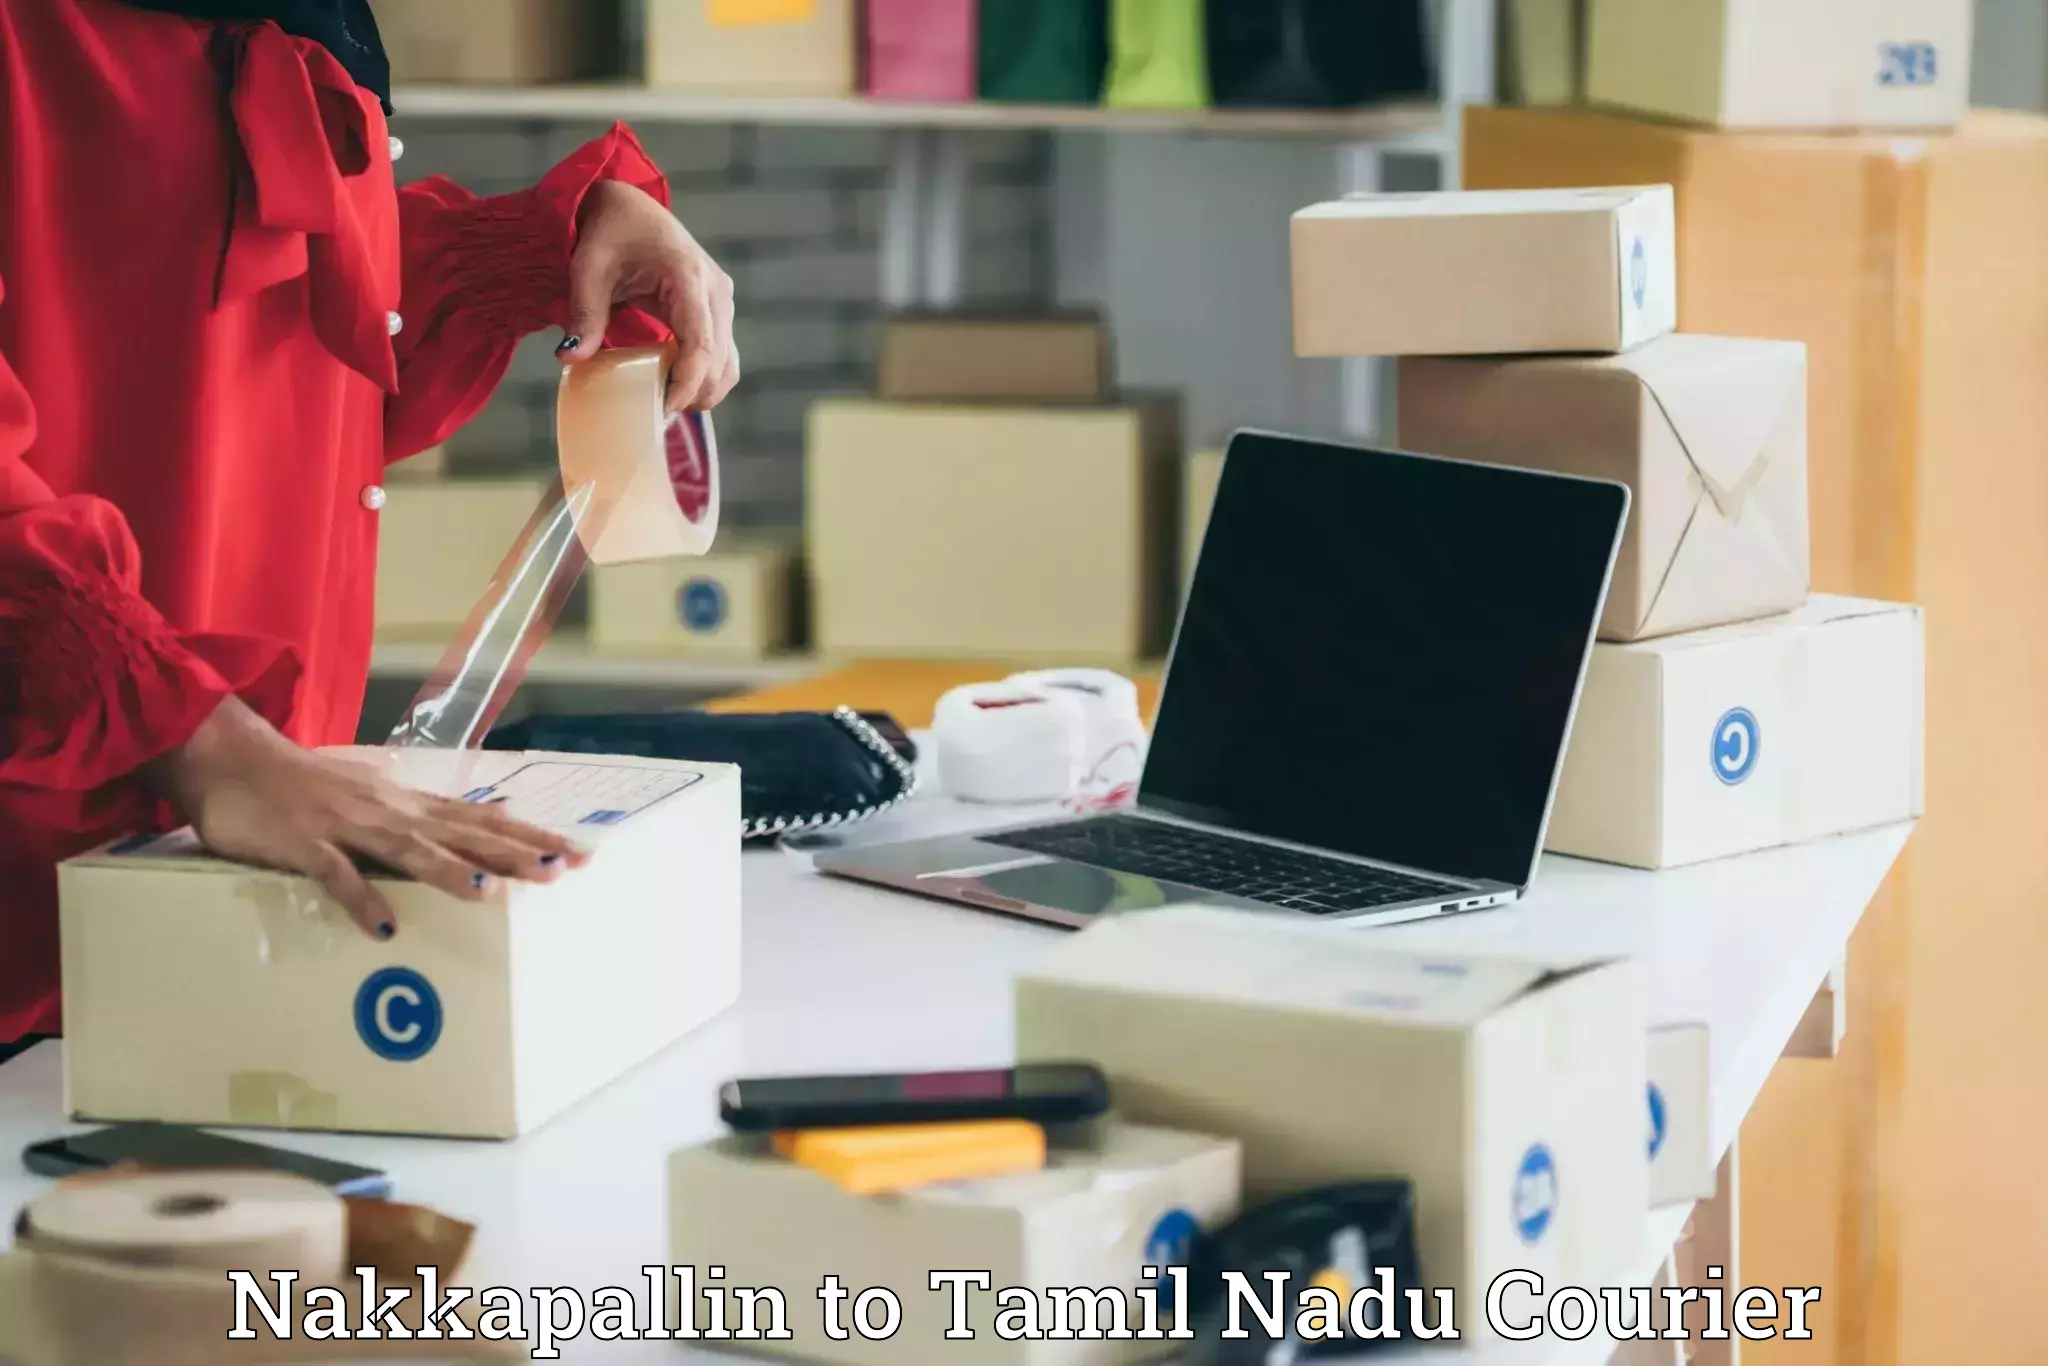 Urgent courier needs Nakkapallin to Anna University Chennai